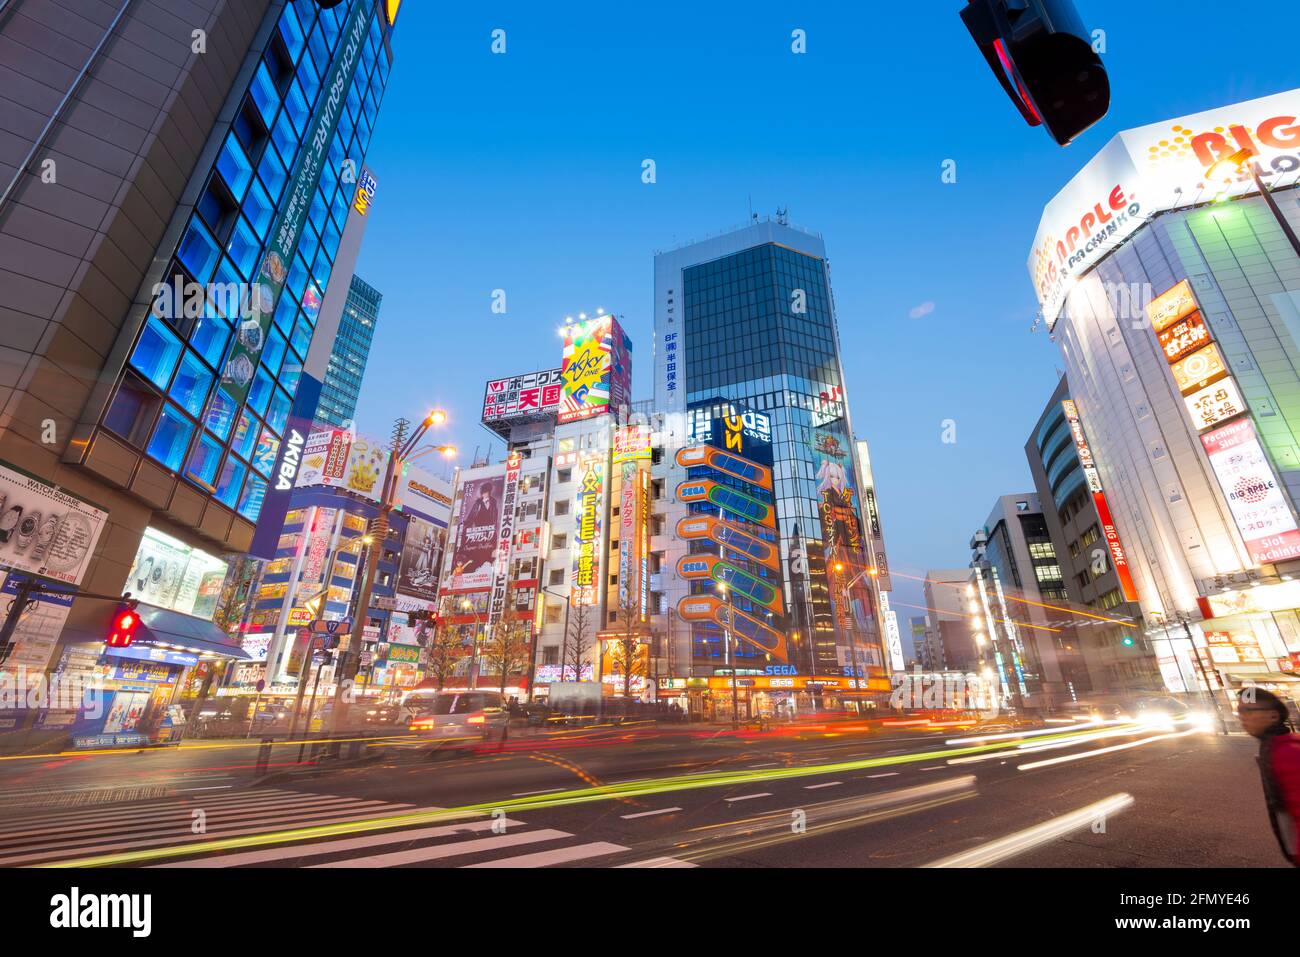 Tokyo, Japon - 8 janvier 2016 : vue sur la rue du quartier d'Akihabara à Tokyo, Japon. Akihabara est un quartier commerçant pour les jeux vidéo, anime, mang Banque D'Images